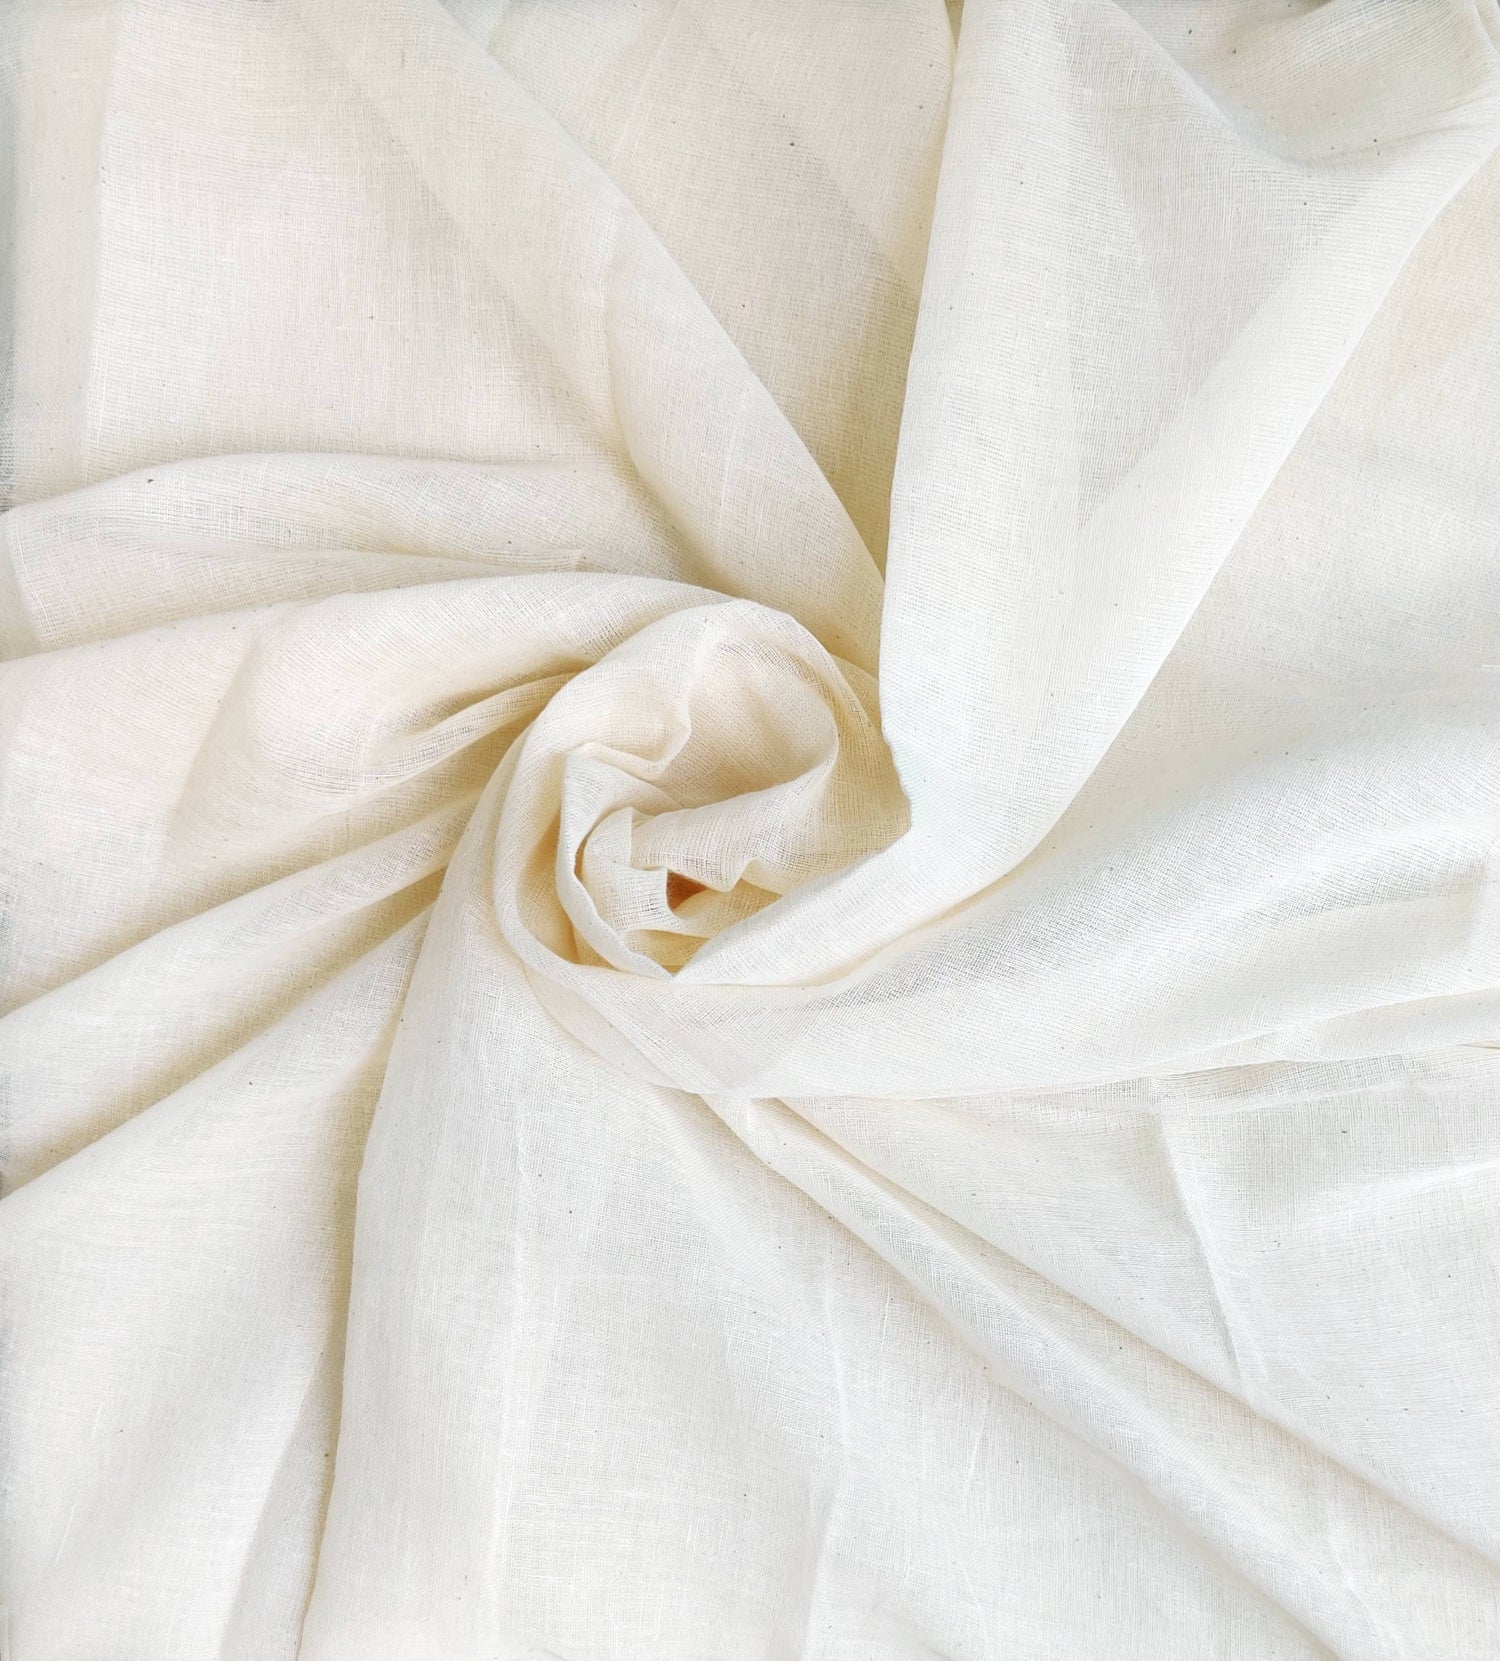 Muslin Cloth